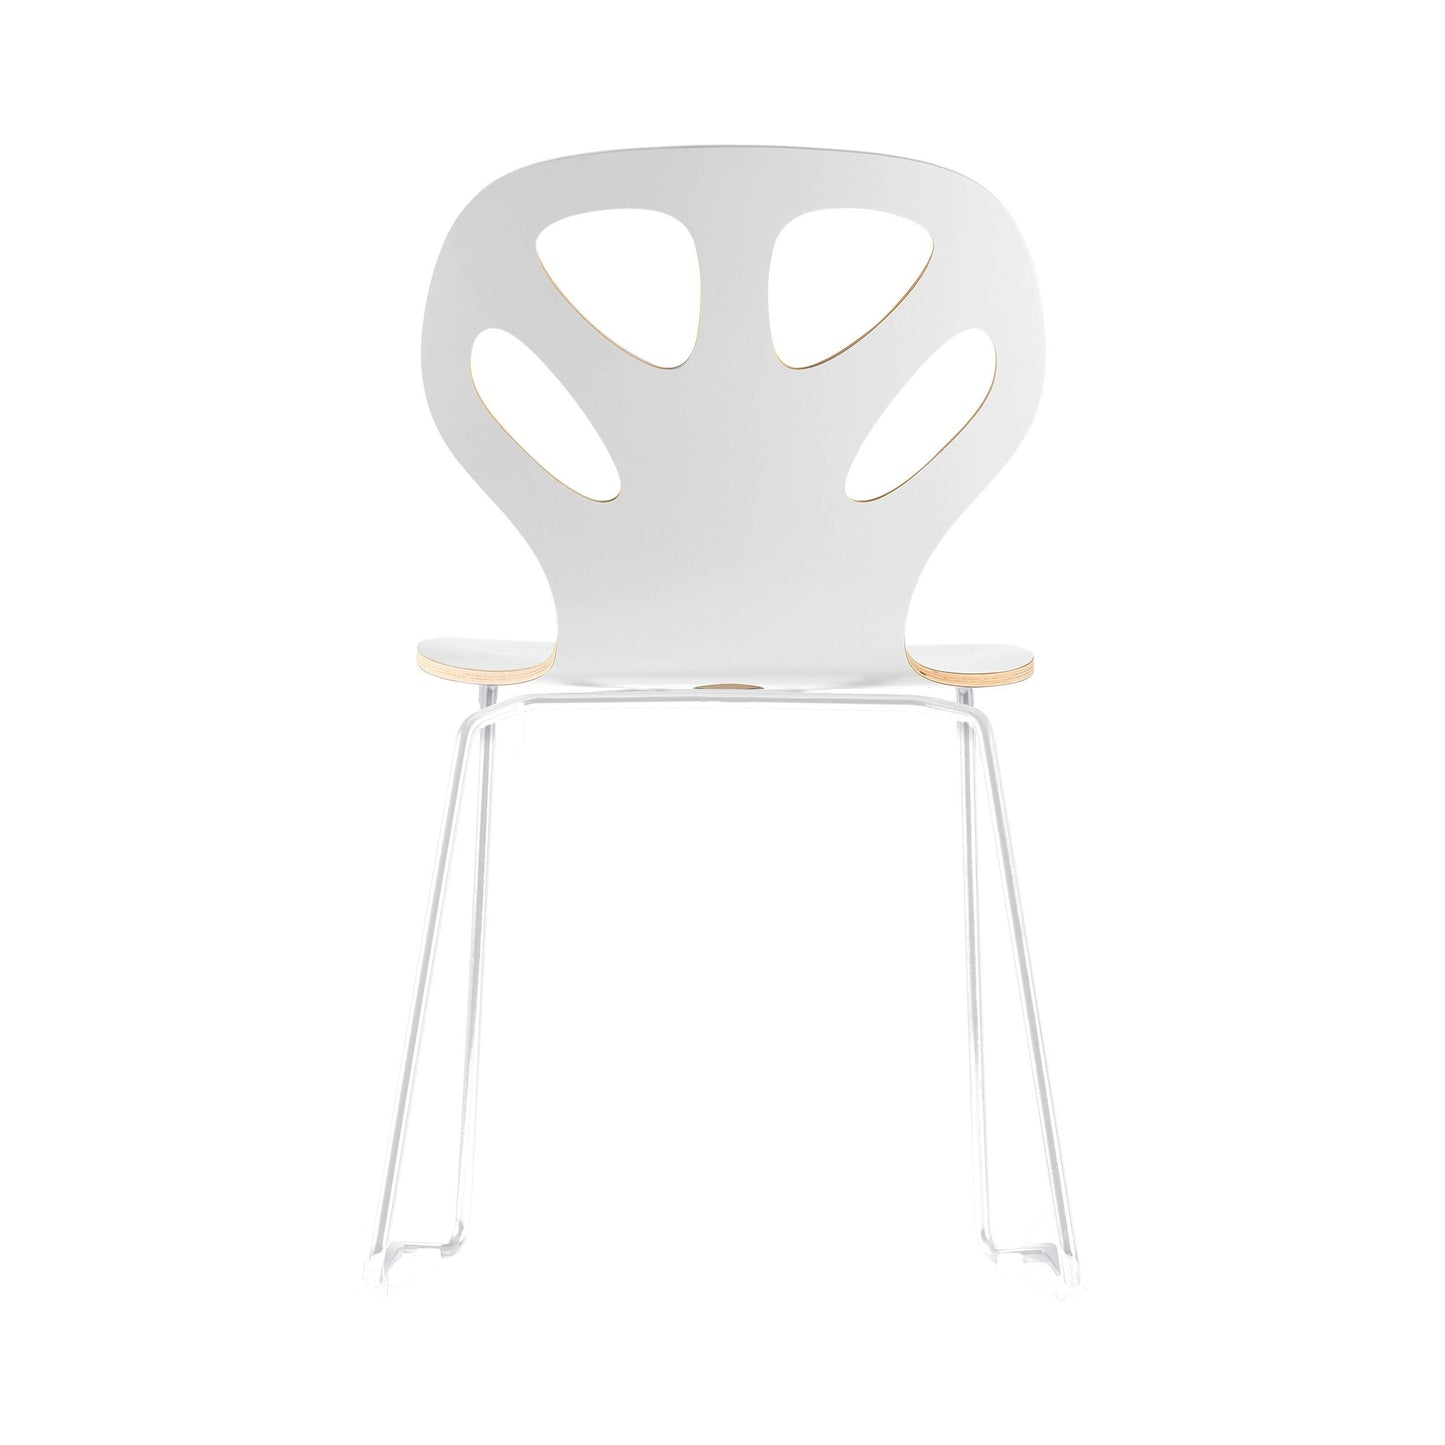 Chair Maple M01 - White